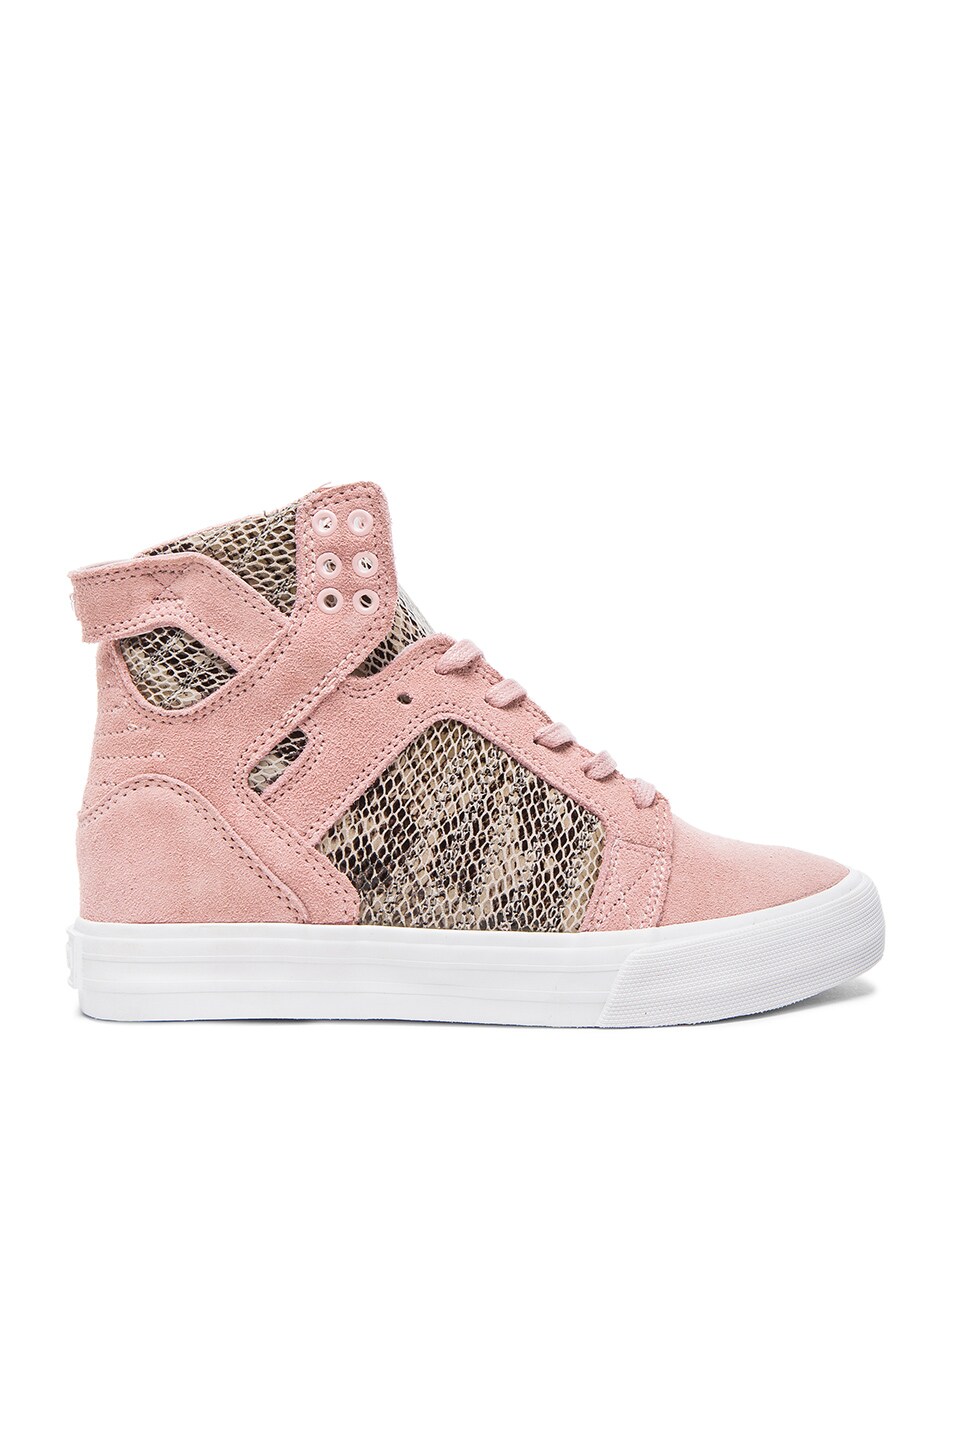 Image 1 of Supra + Elyse Walker Skytop Wedge Suede Sneakers in Pink